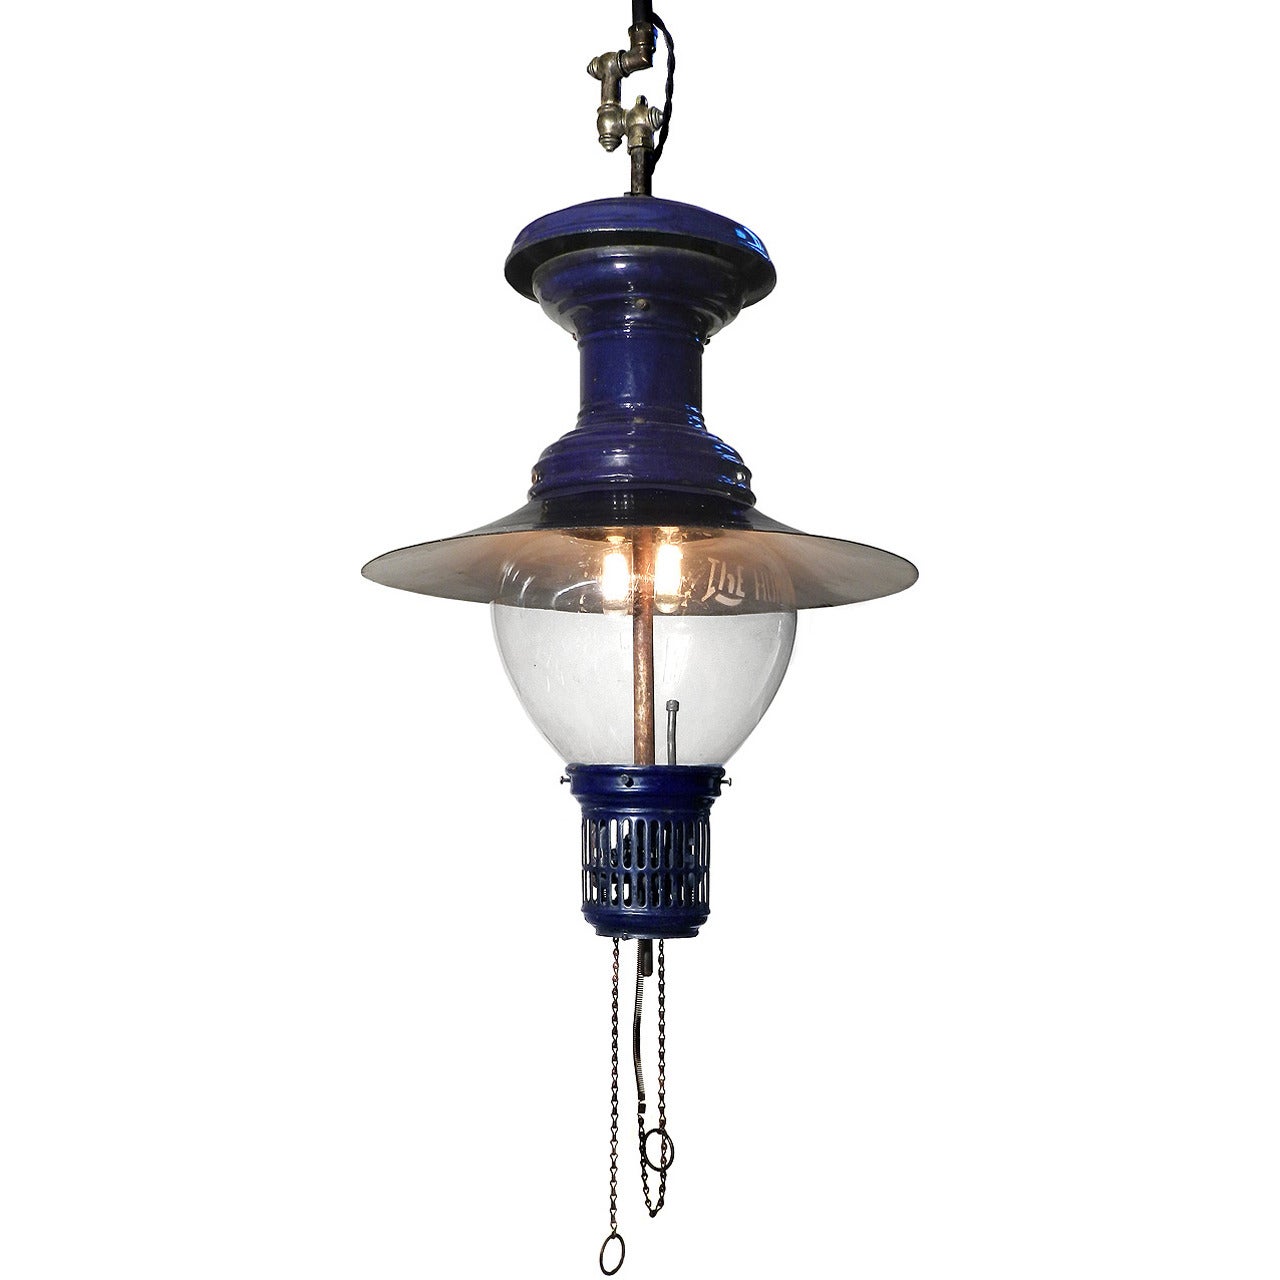 Large Rare 1901 Humphrey Gas Lamp, Electrified